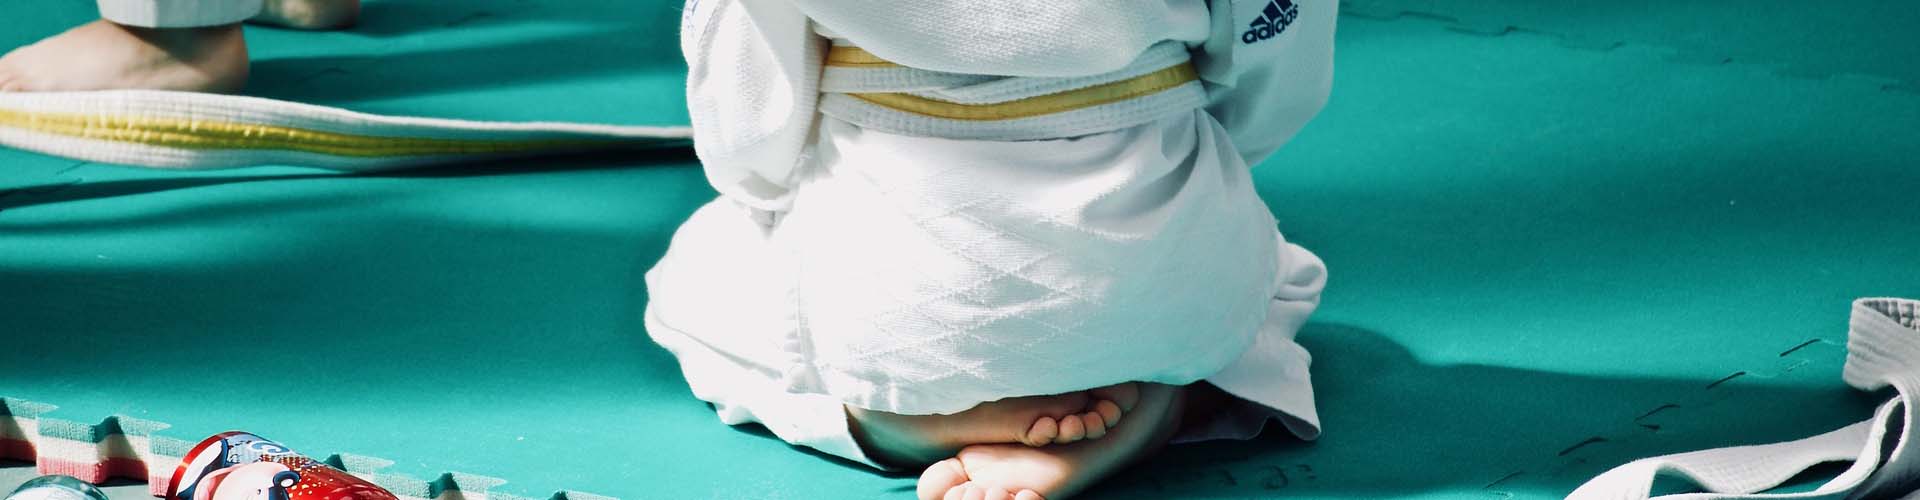 Salutismo E Benessere: Le Radici Del Kung Fu Marziale Curativo